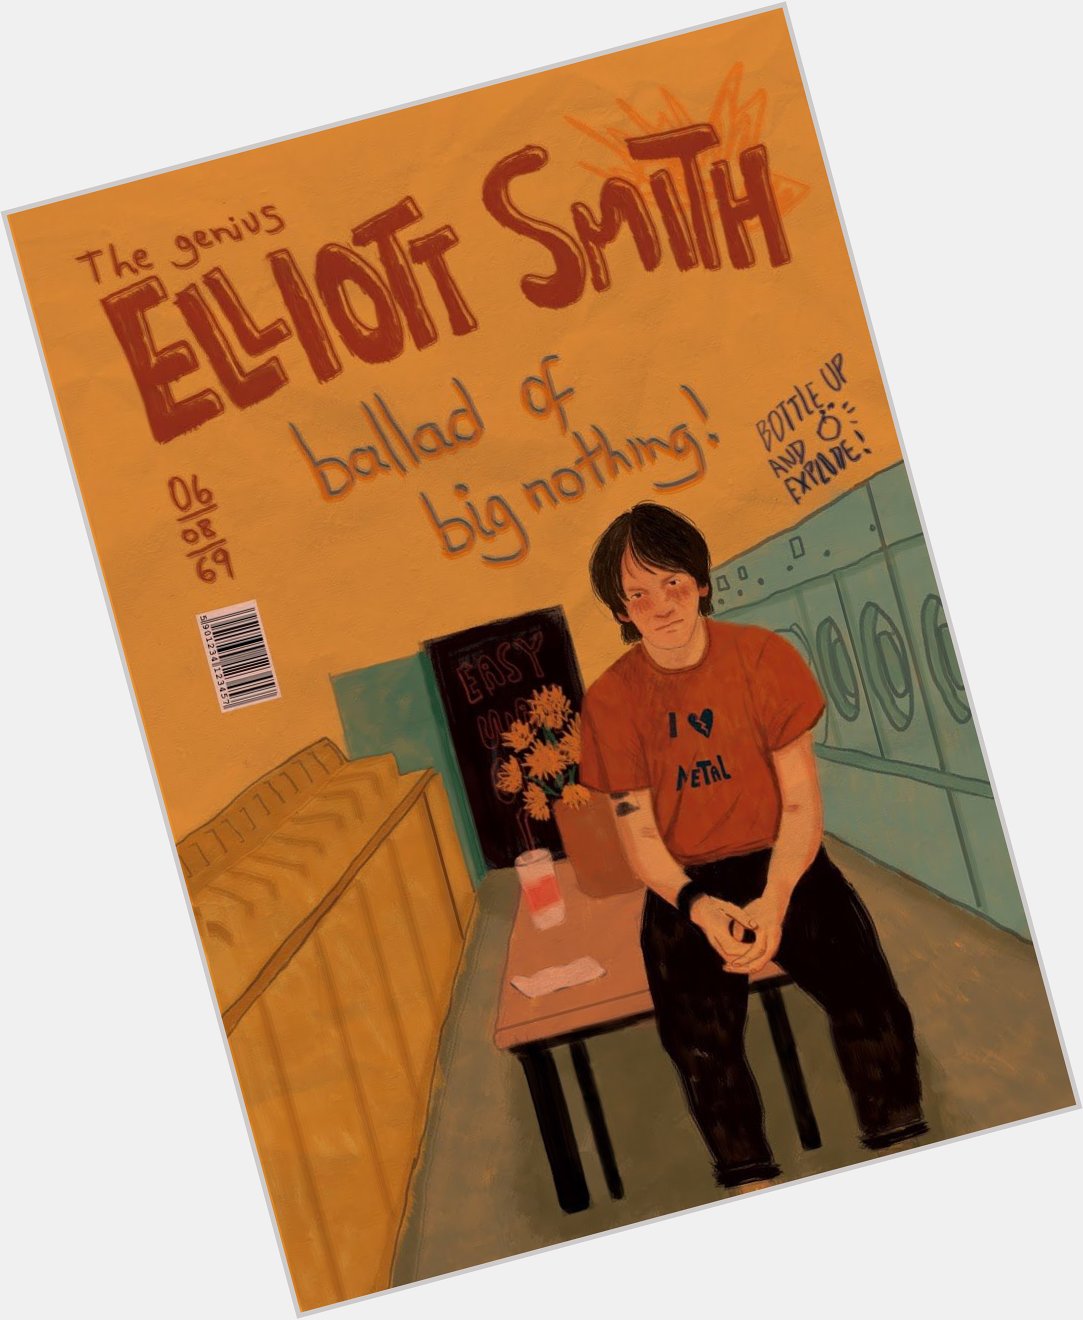 Happy birthday, birthday boy. The softest voice, the genius, Elliott Smith! I love you   